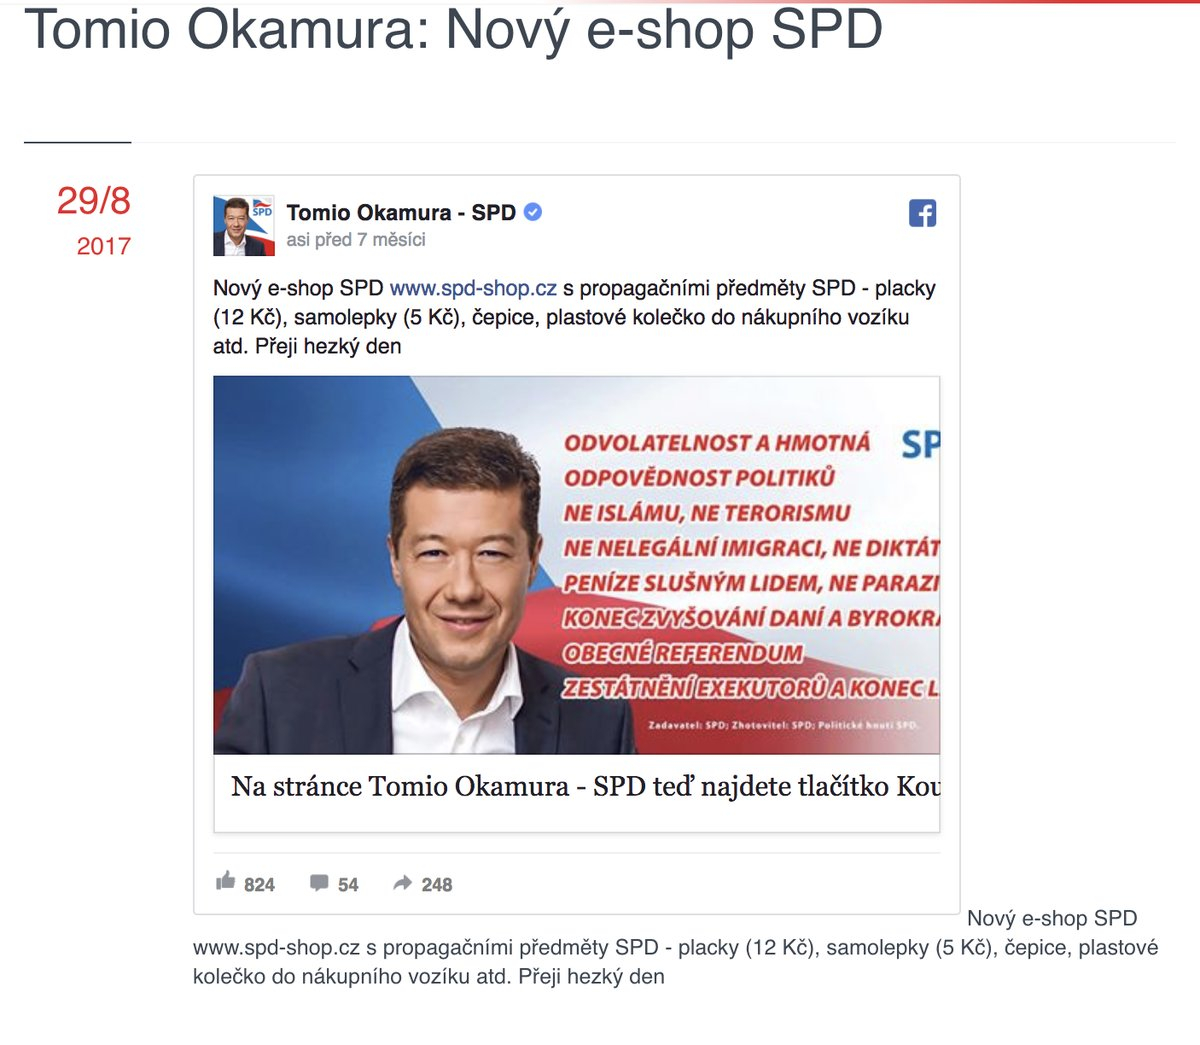 E-shop podle všeho napadl SPD teprve nedávno